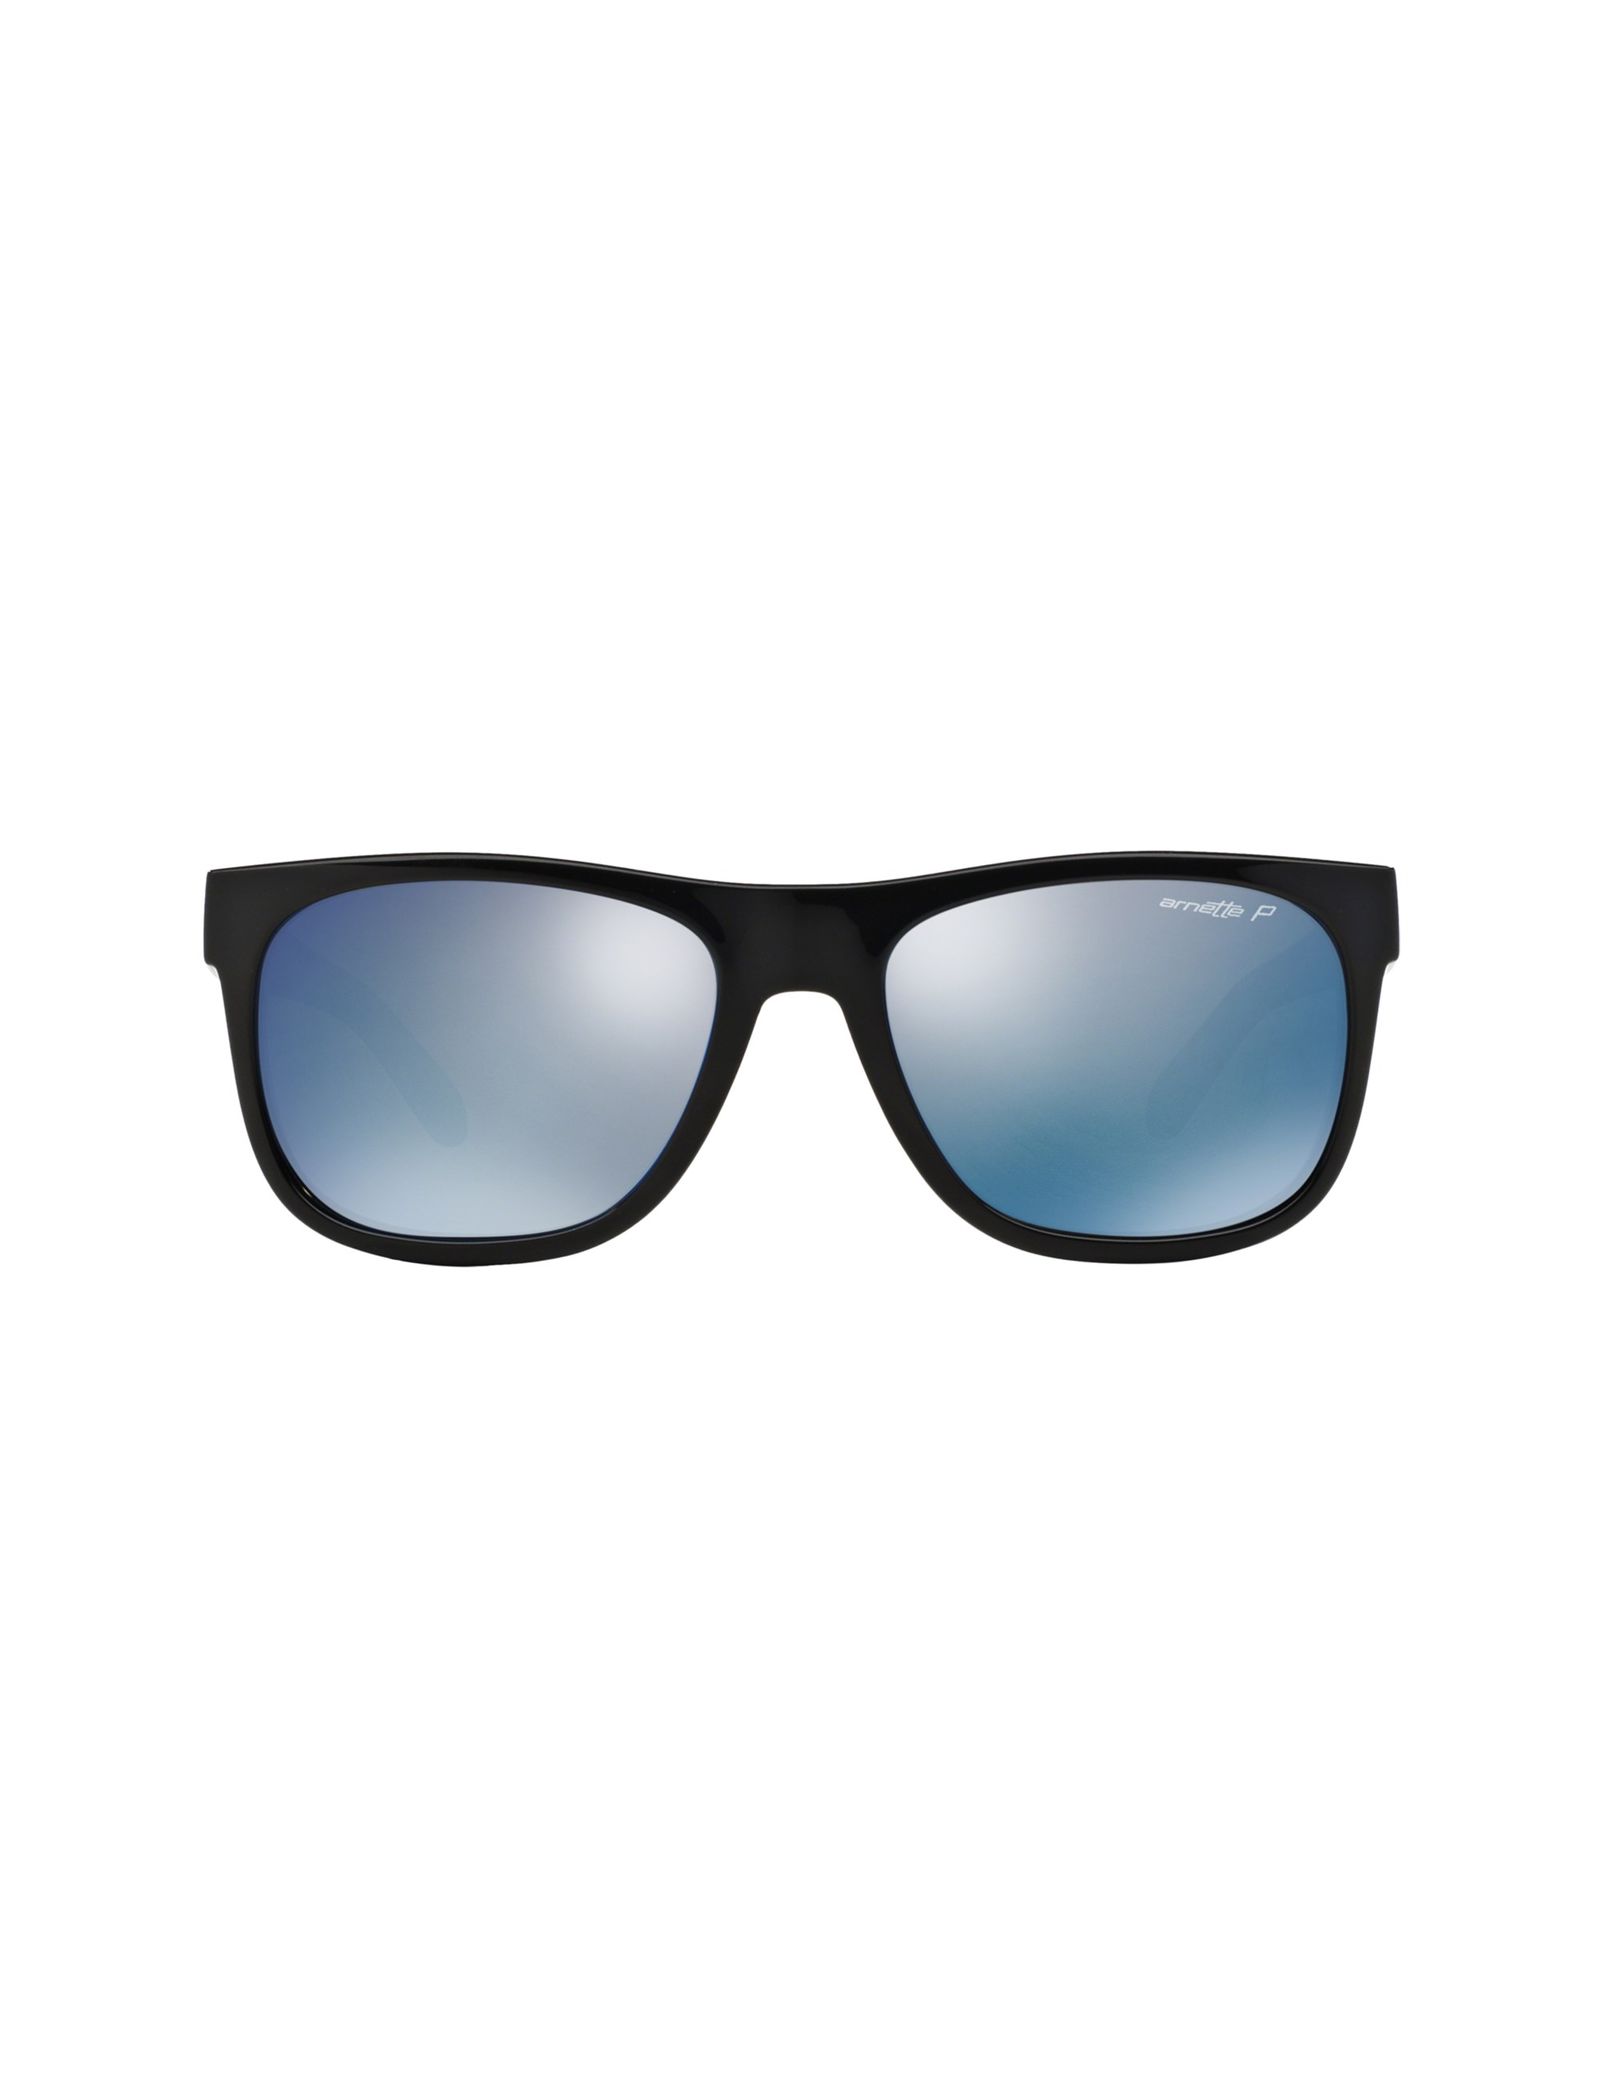 عینک آفتابی ویفرر مردانه - آرنت - مشکي و آبي - 1